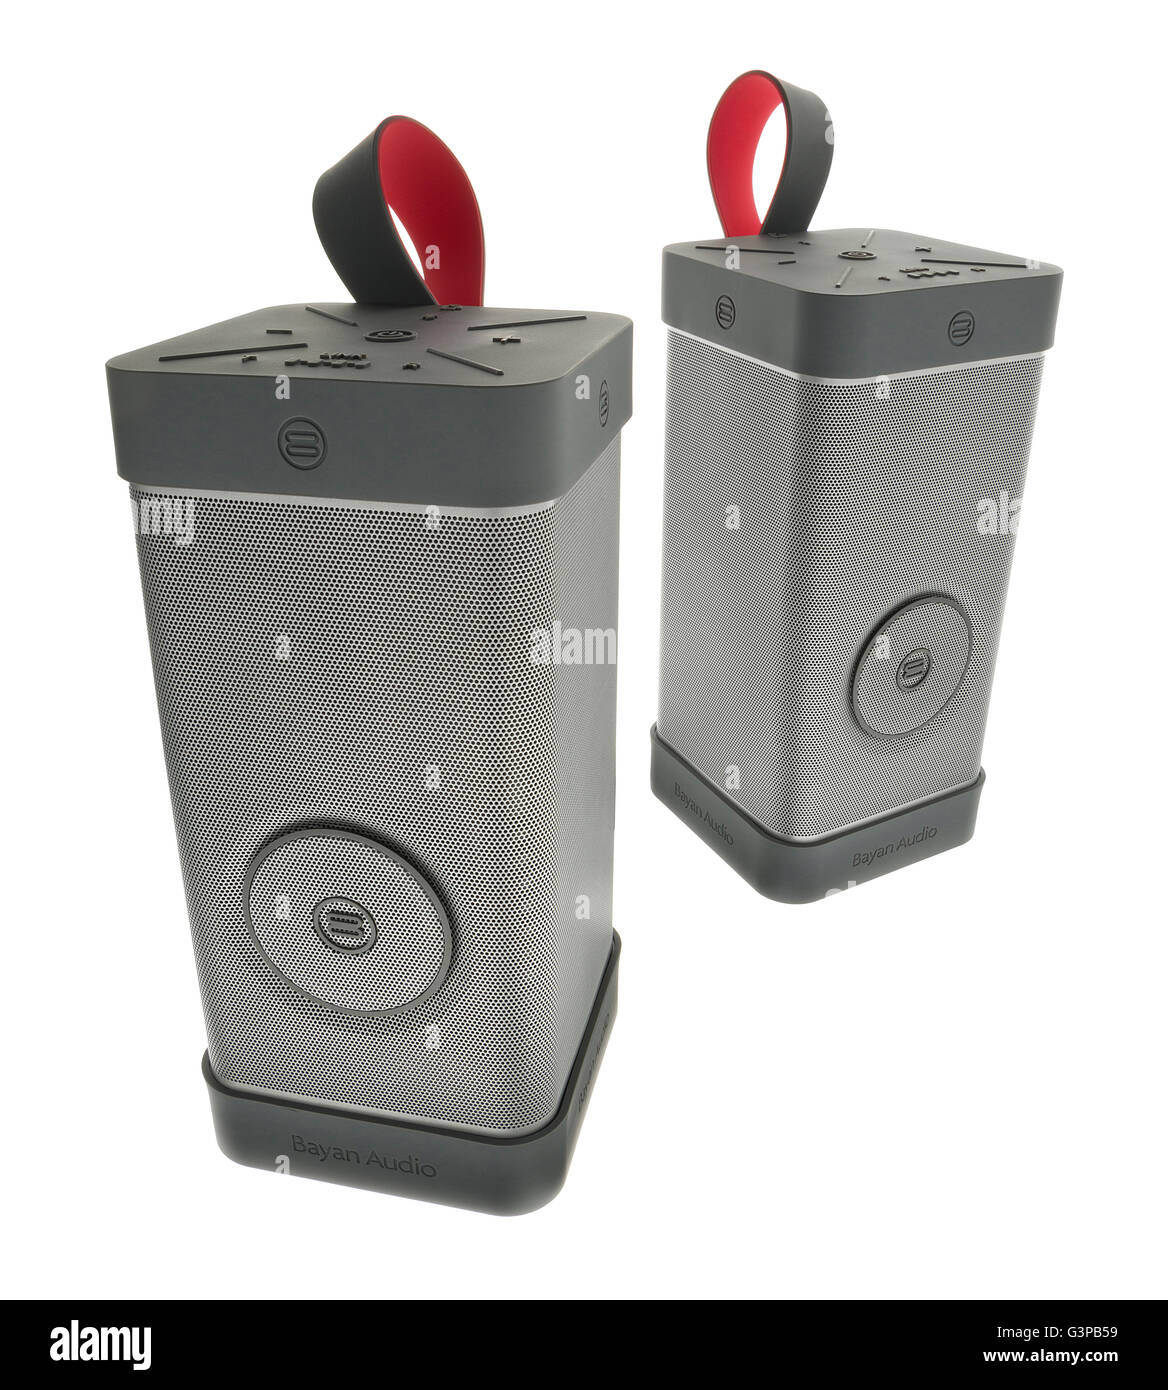 Soundscene audio haut-parleur extérieur Bayan. Haut-parleurs Bluetooth sans fil portable. Banque D'Images